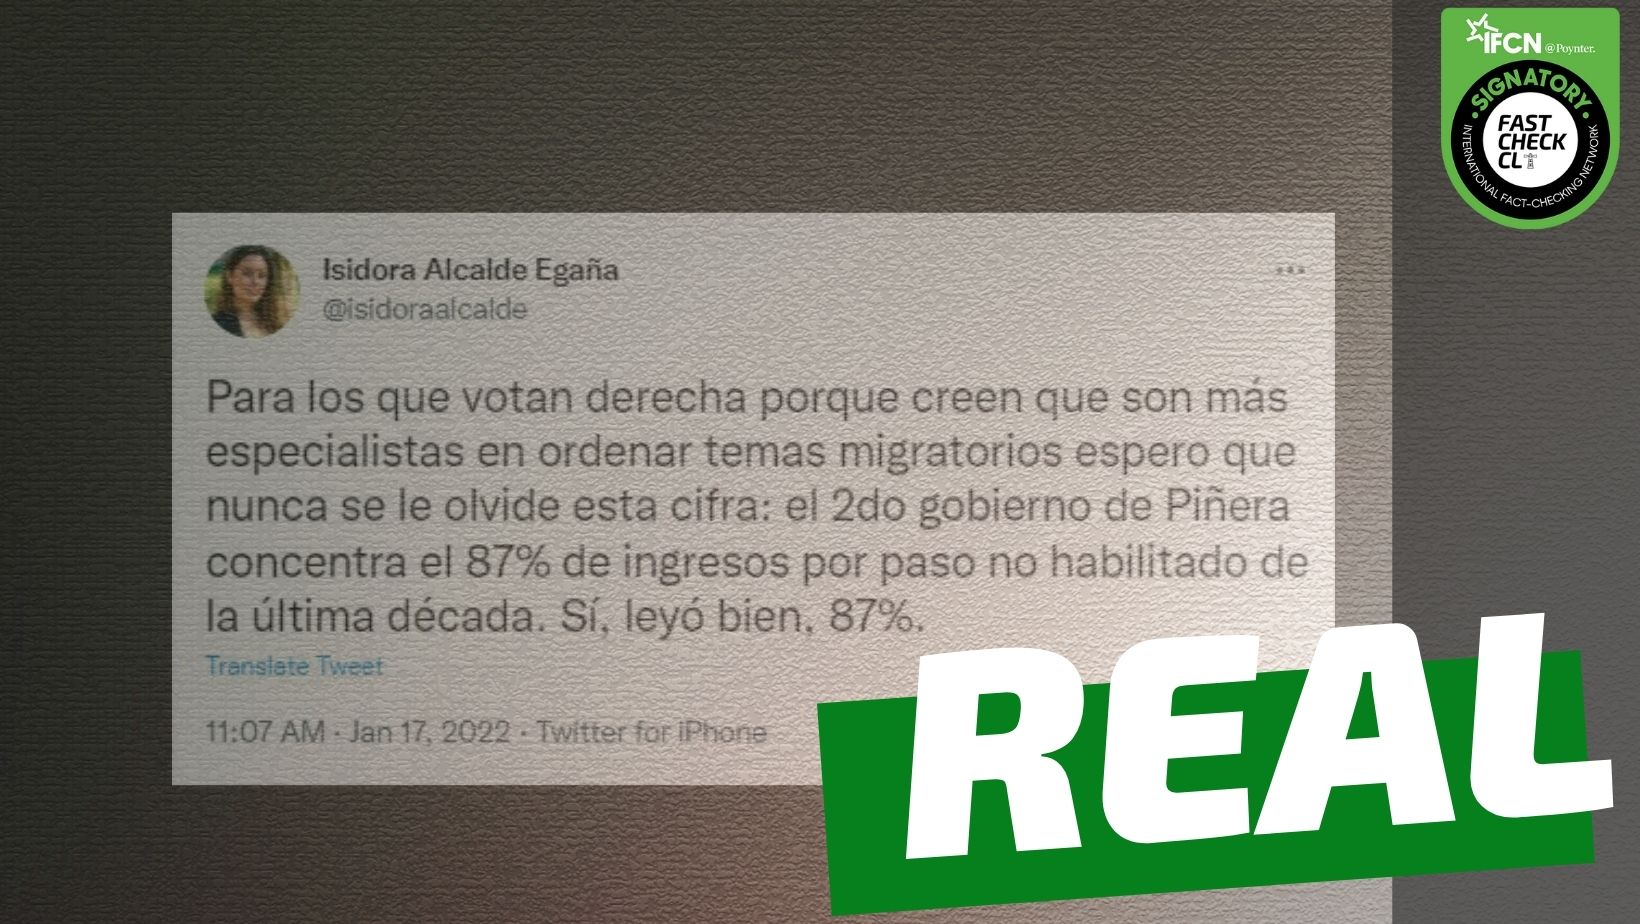 Read more about the article “El segundo gobierno de Piñera concentra el 87% de ingresos por paso no habilitado de la última década”: #Real